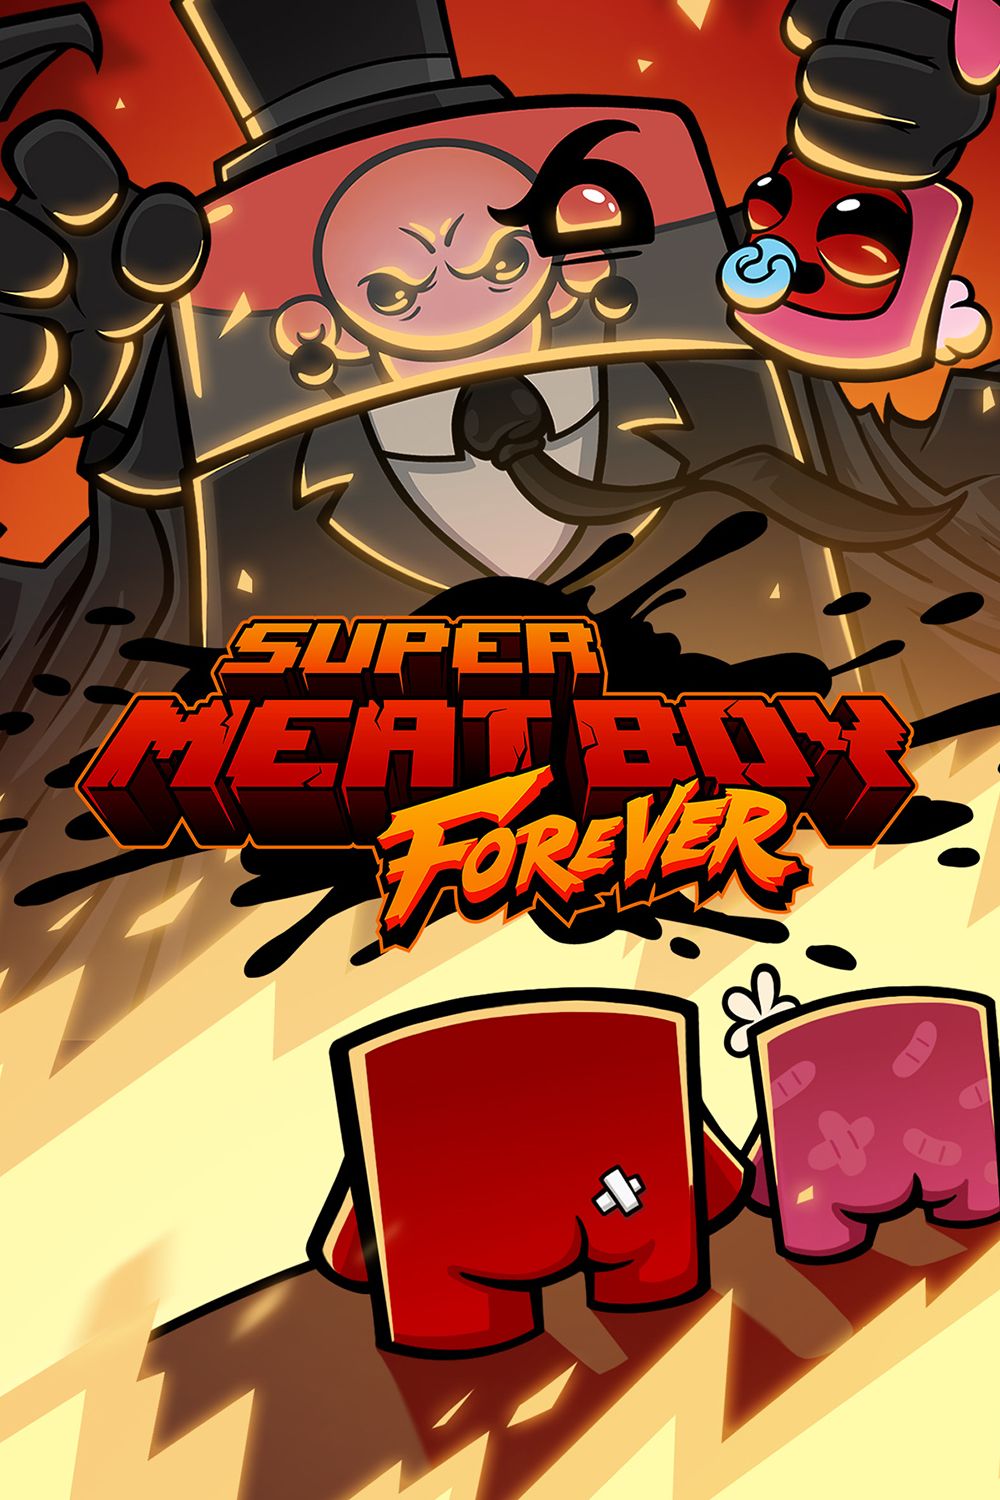 super meat boy forever